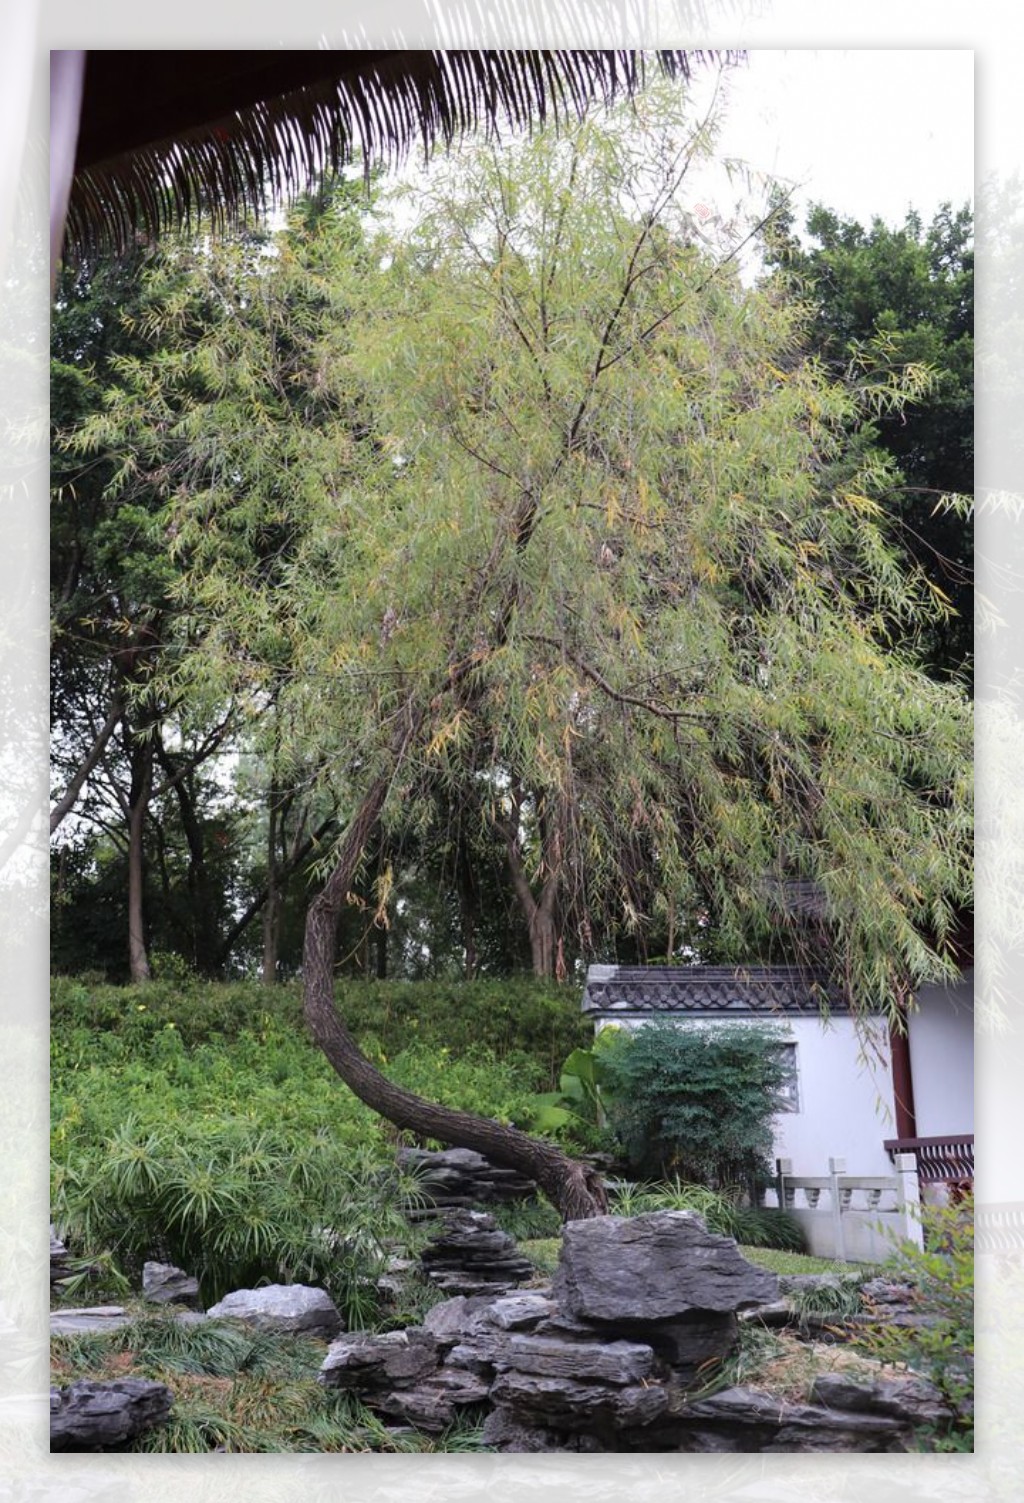 河边柳树